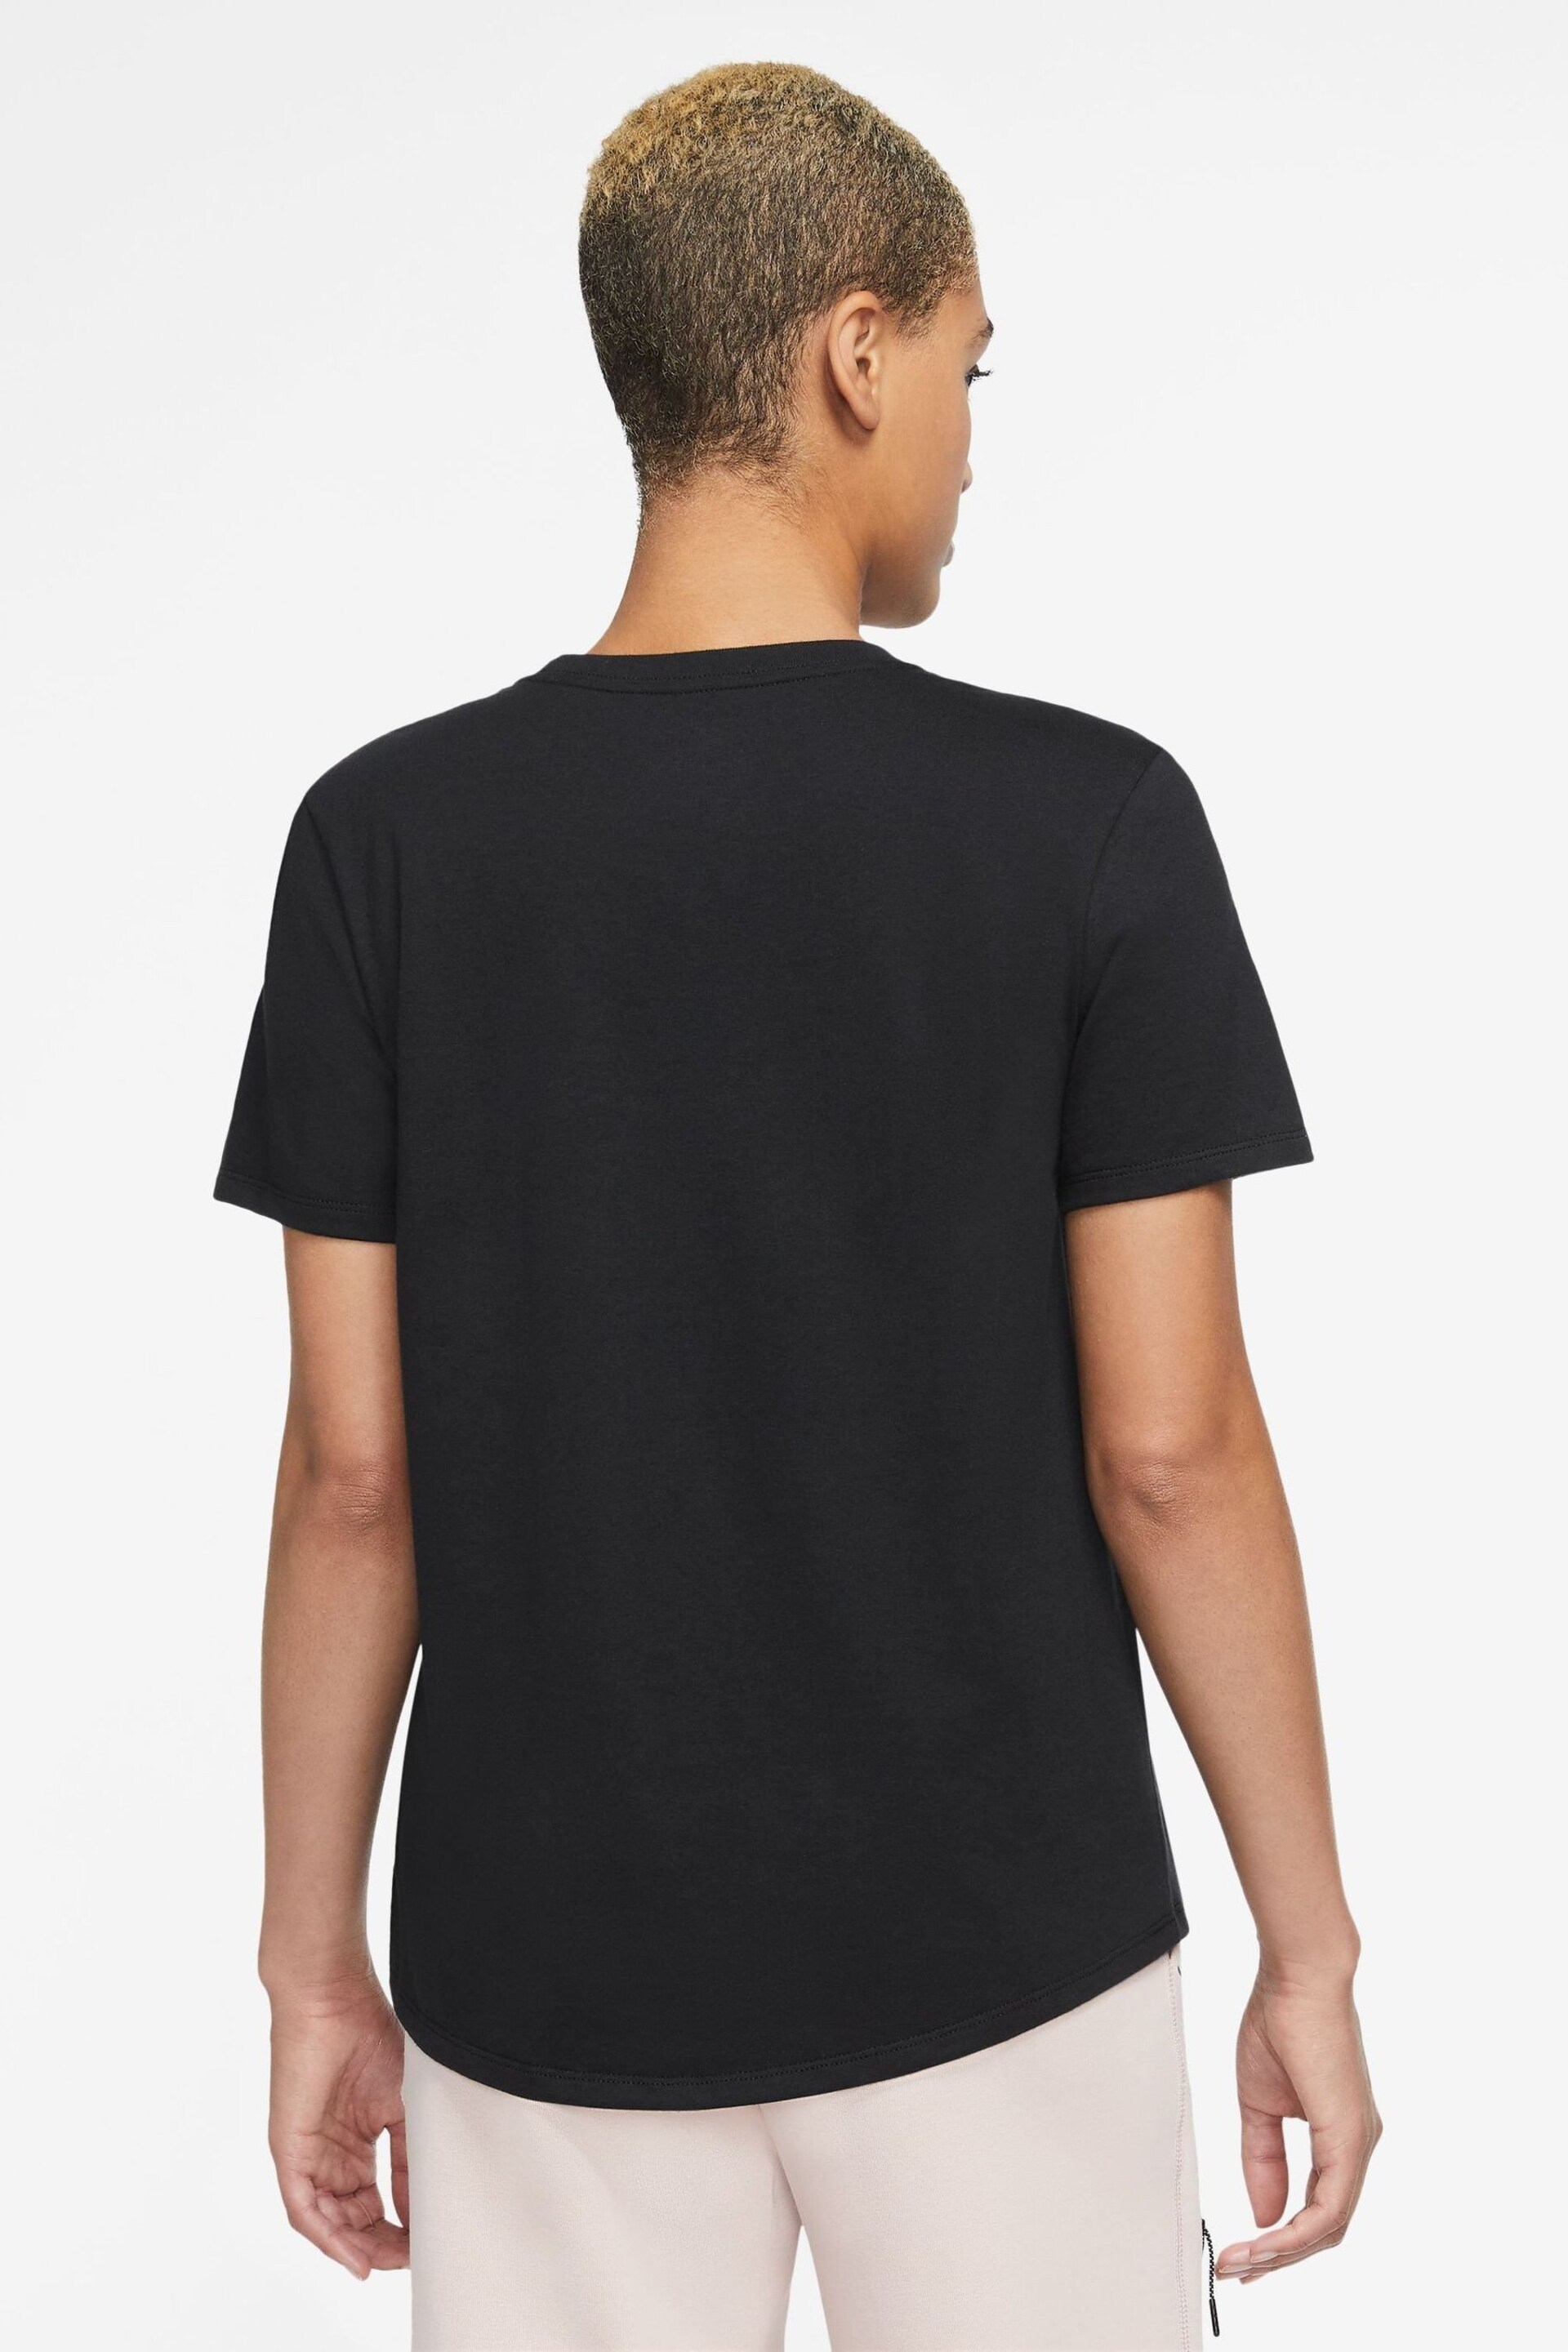 Nike Black Essential Icon T-Shirt - Image 2 of 3